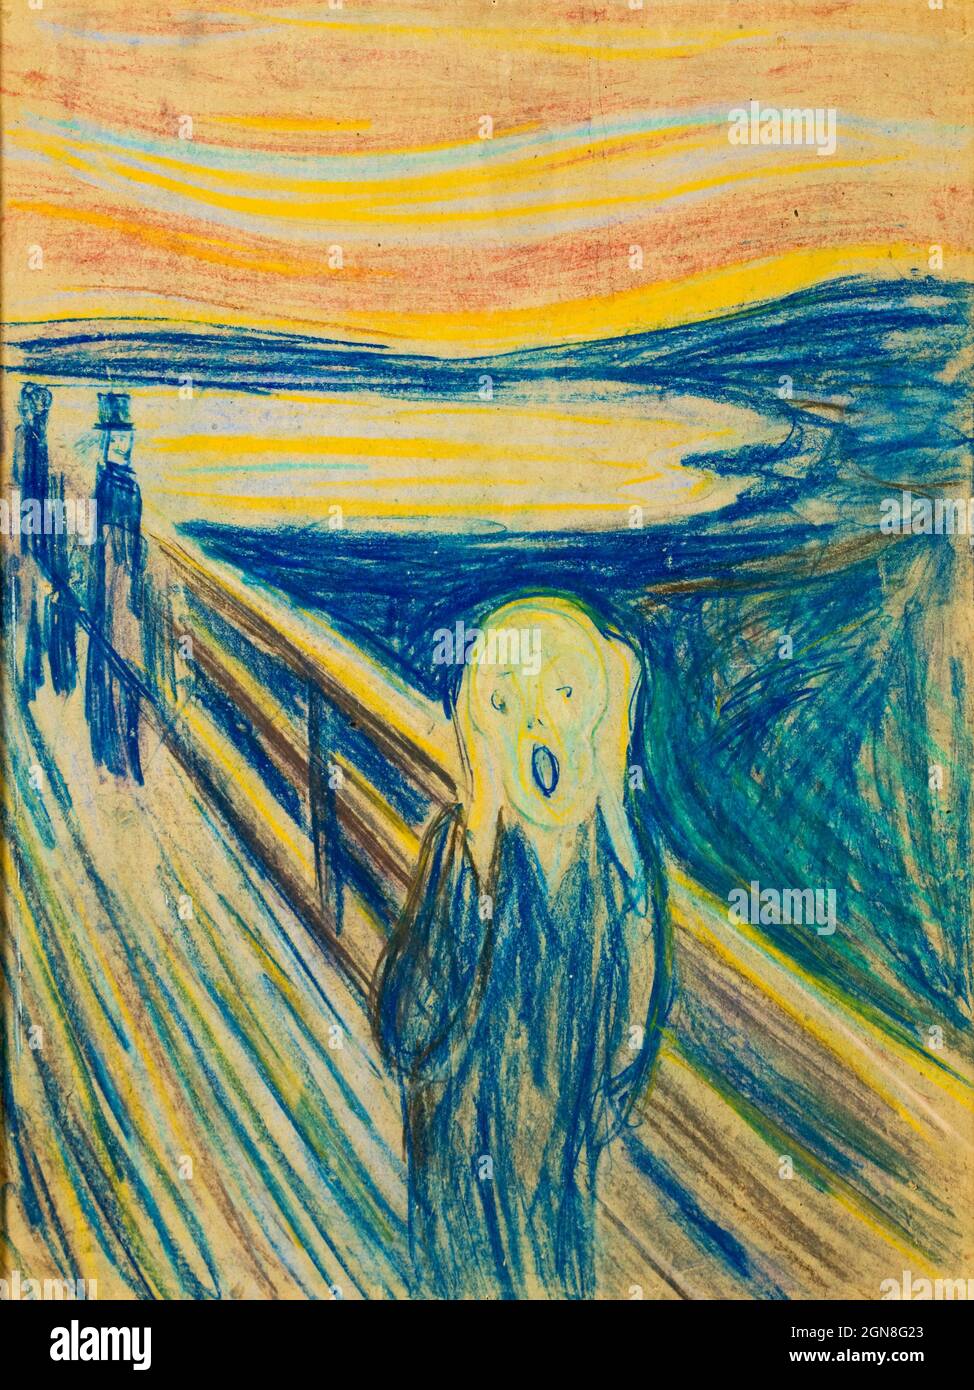 En tant que première version de 'The Scream', ce pastel semble être l'esquisse dans laquelle Munch a cartographié les éléments essentiels de la composition. Banque D'Images